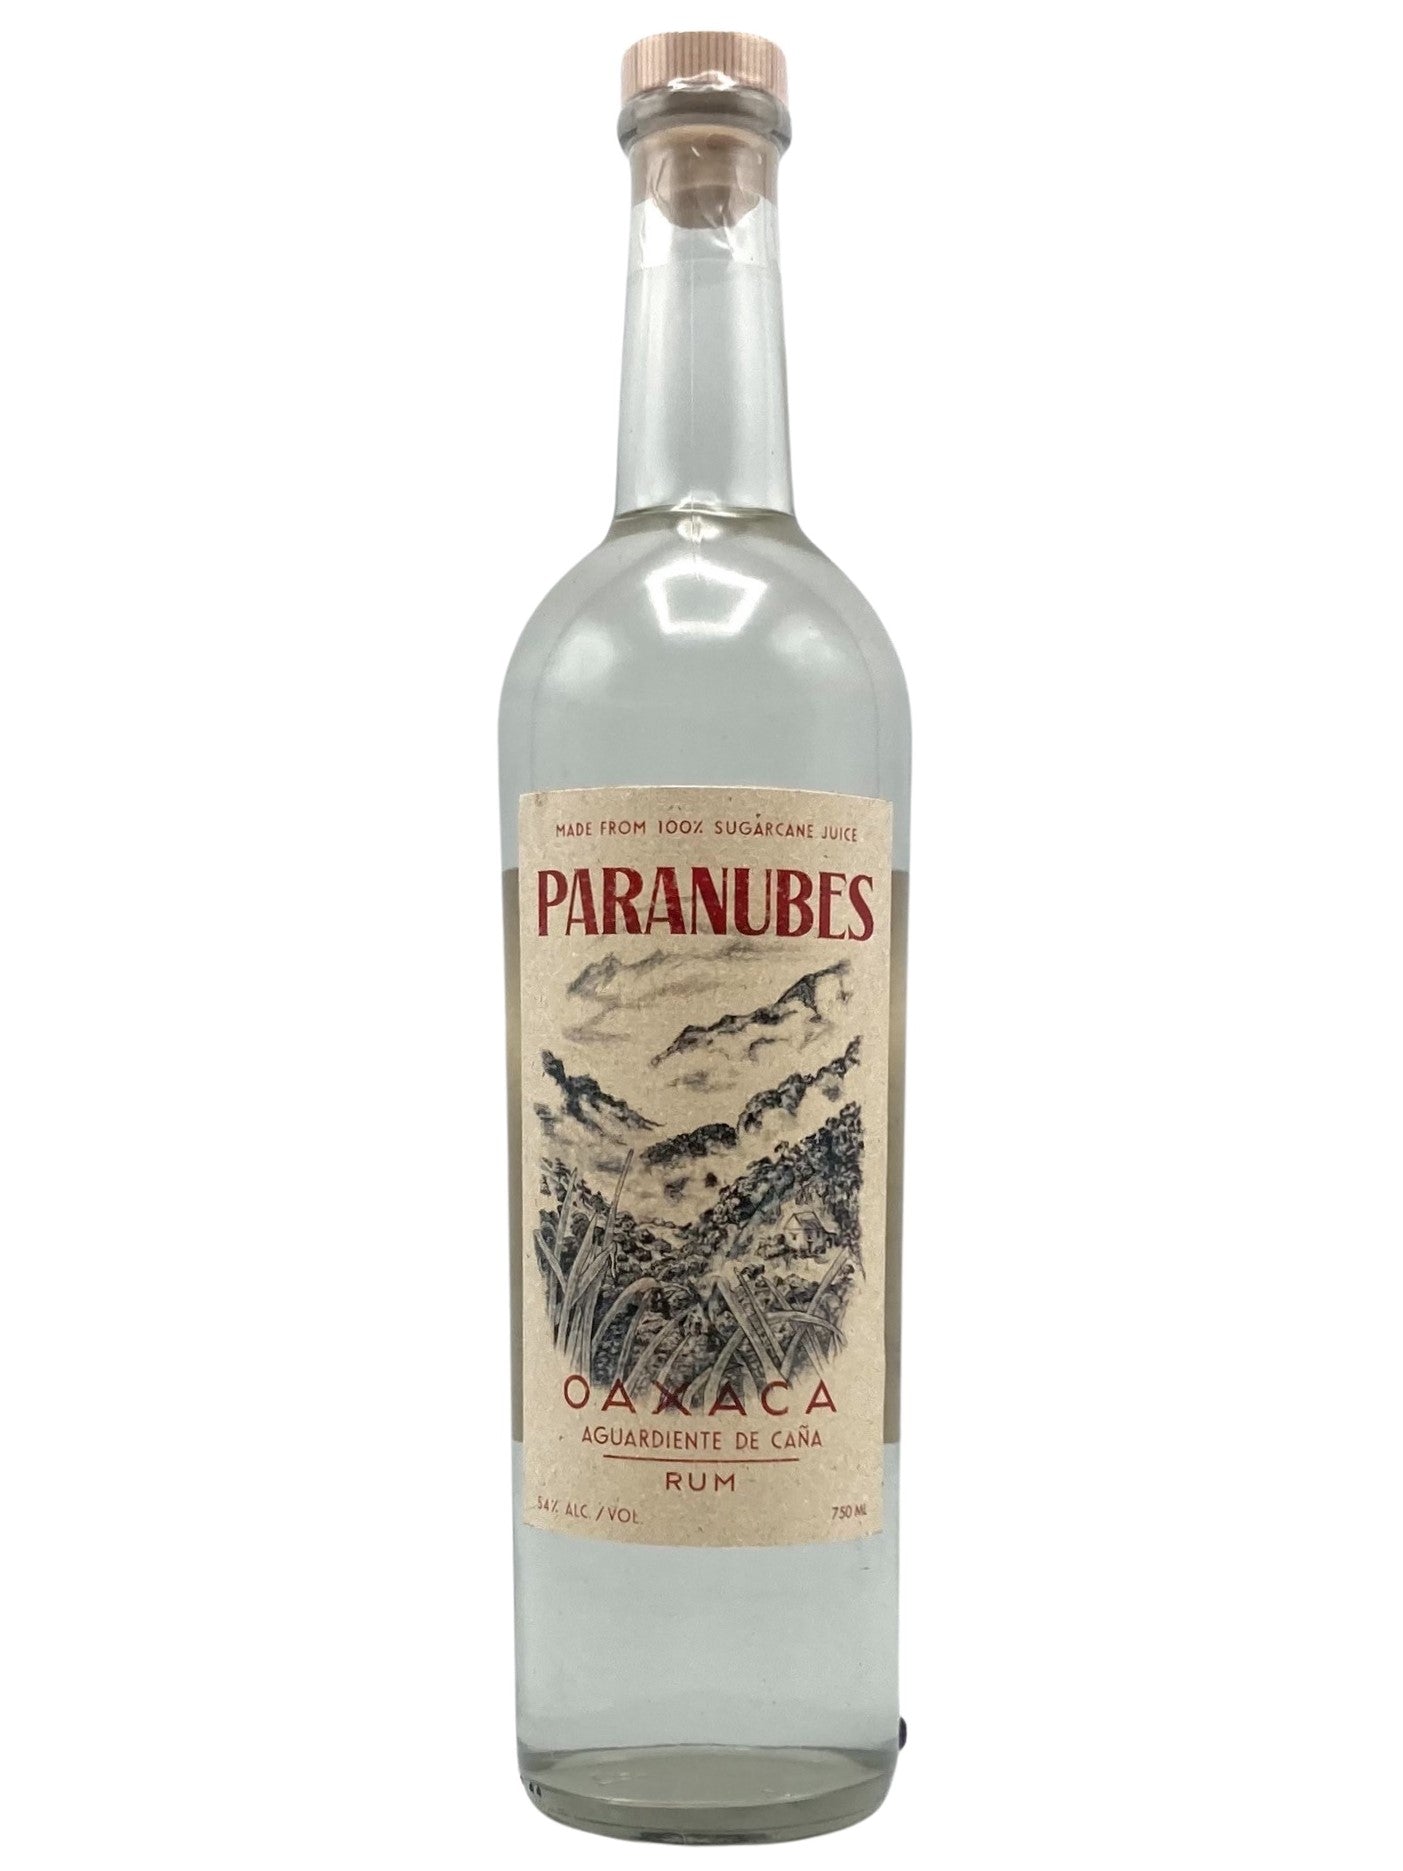 Paranubes Oaxaca Rum